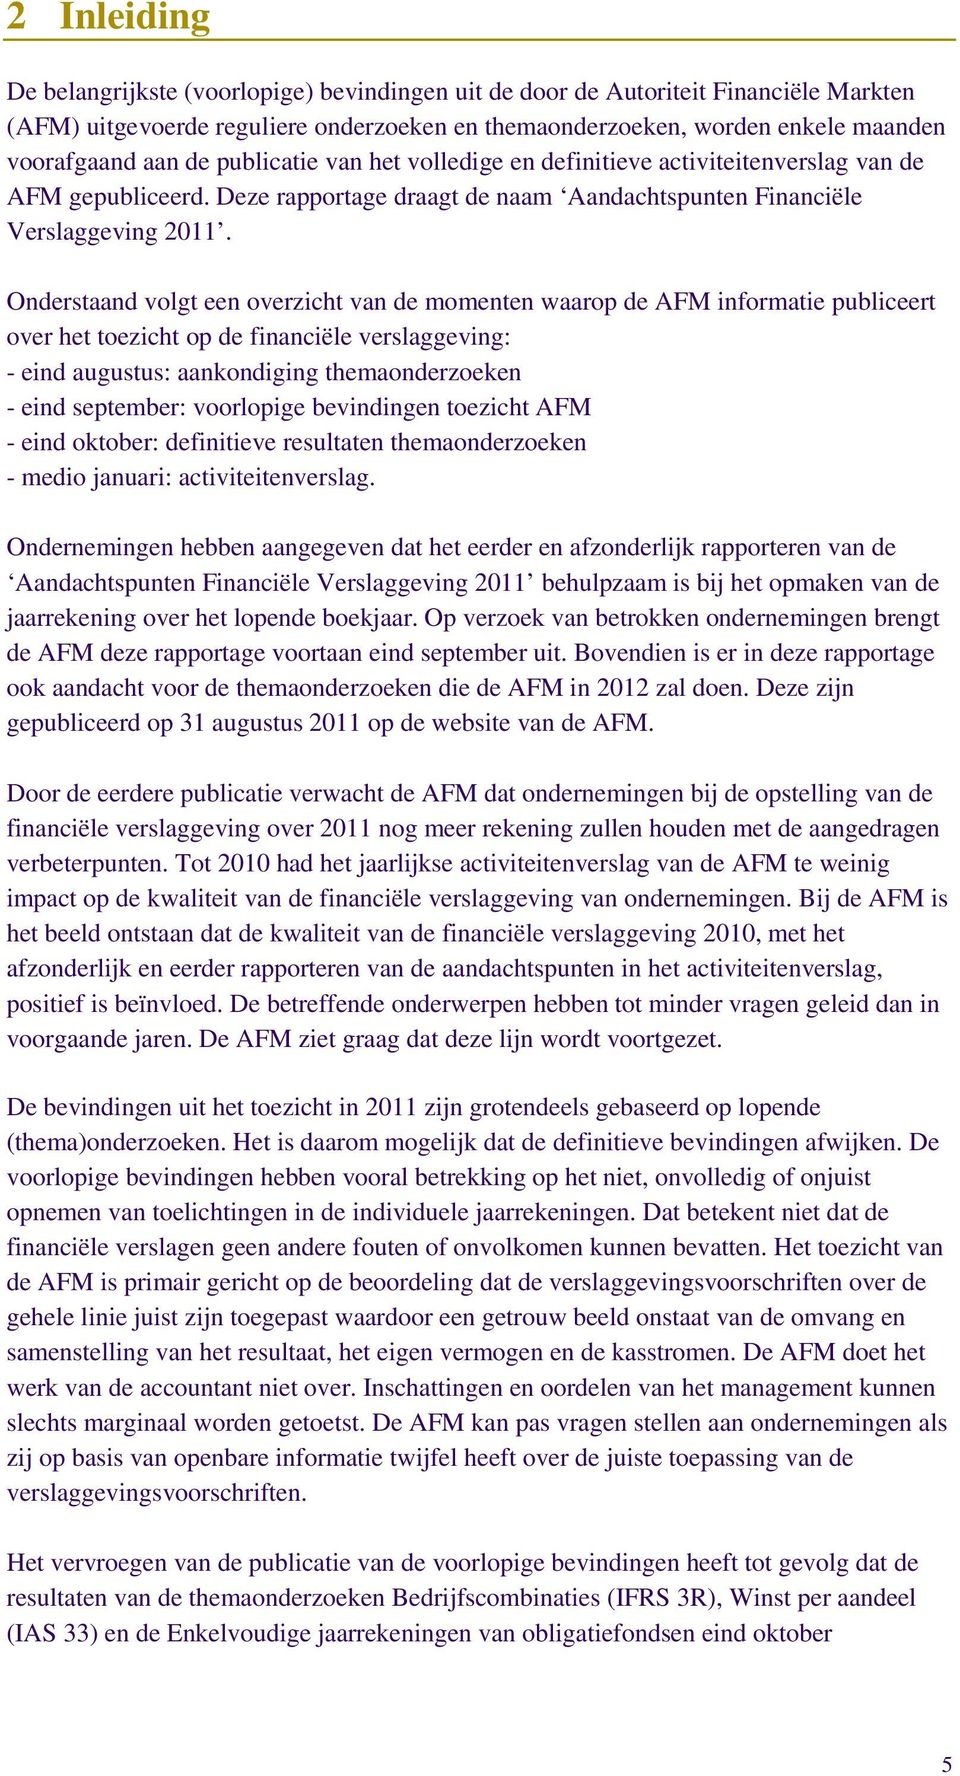 Onderstaand volgt een overzicht van de momenten waarop de AFM informatie publiceert over het toezicht op de financiële verslaggeving: - eind augustus: aankondiging themaonderzoeken - eind september: